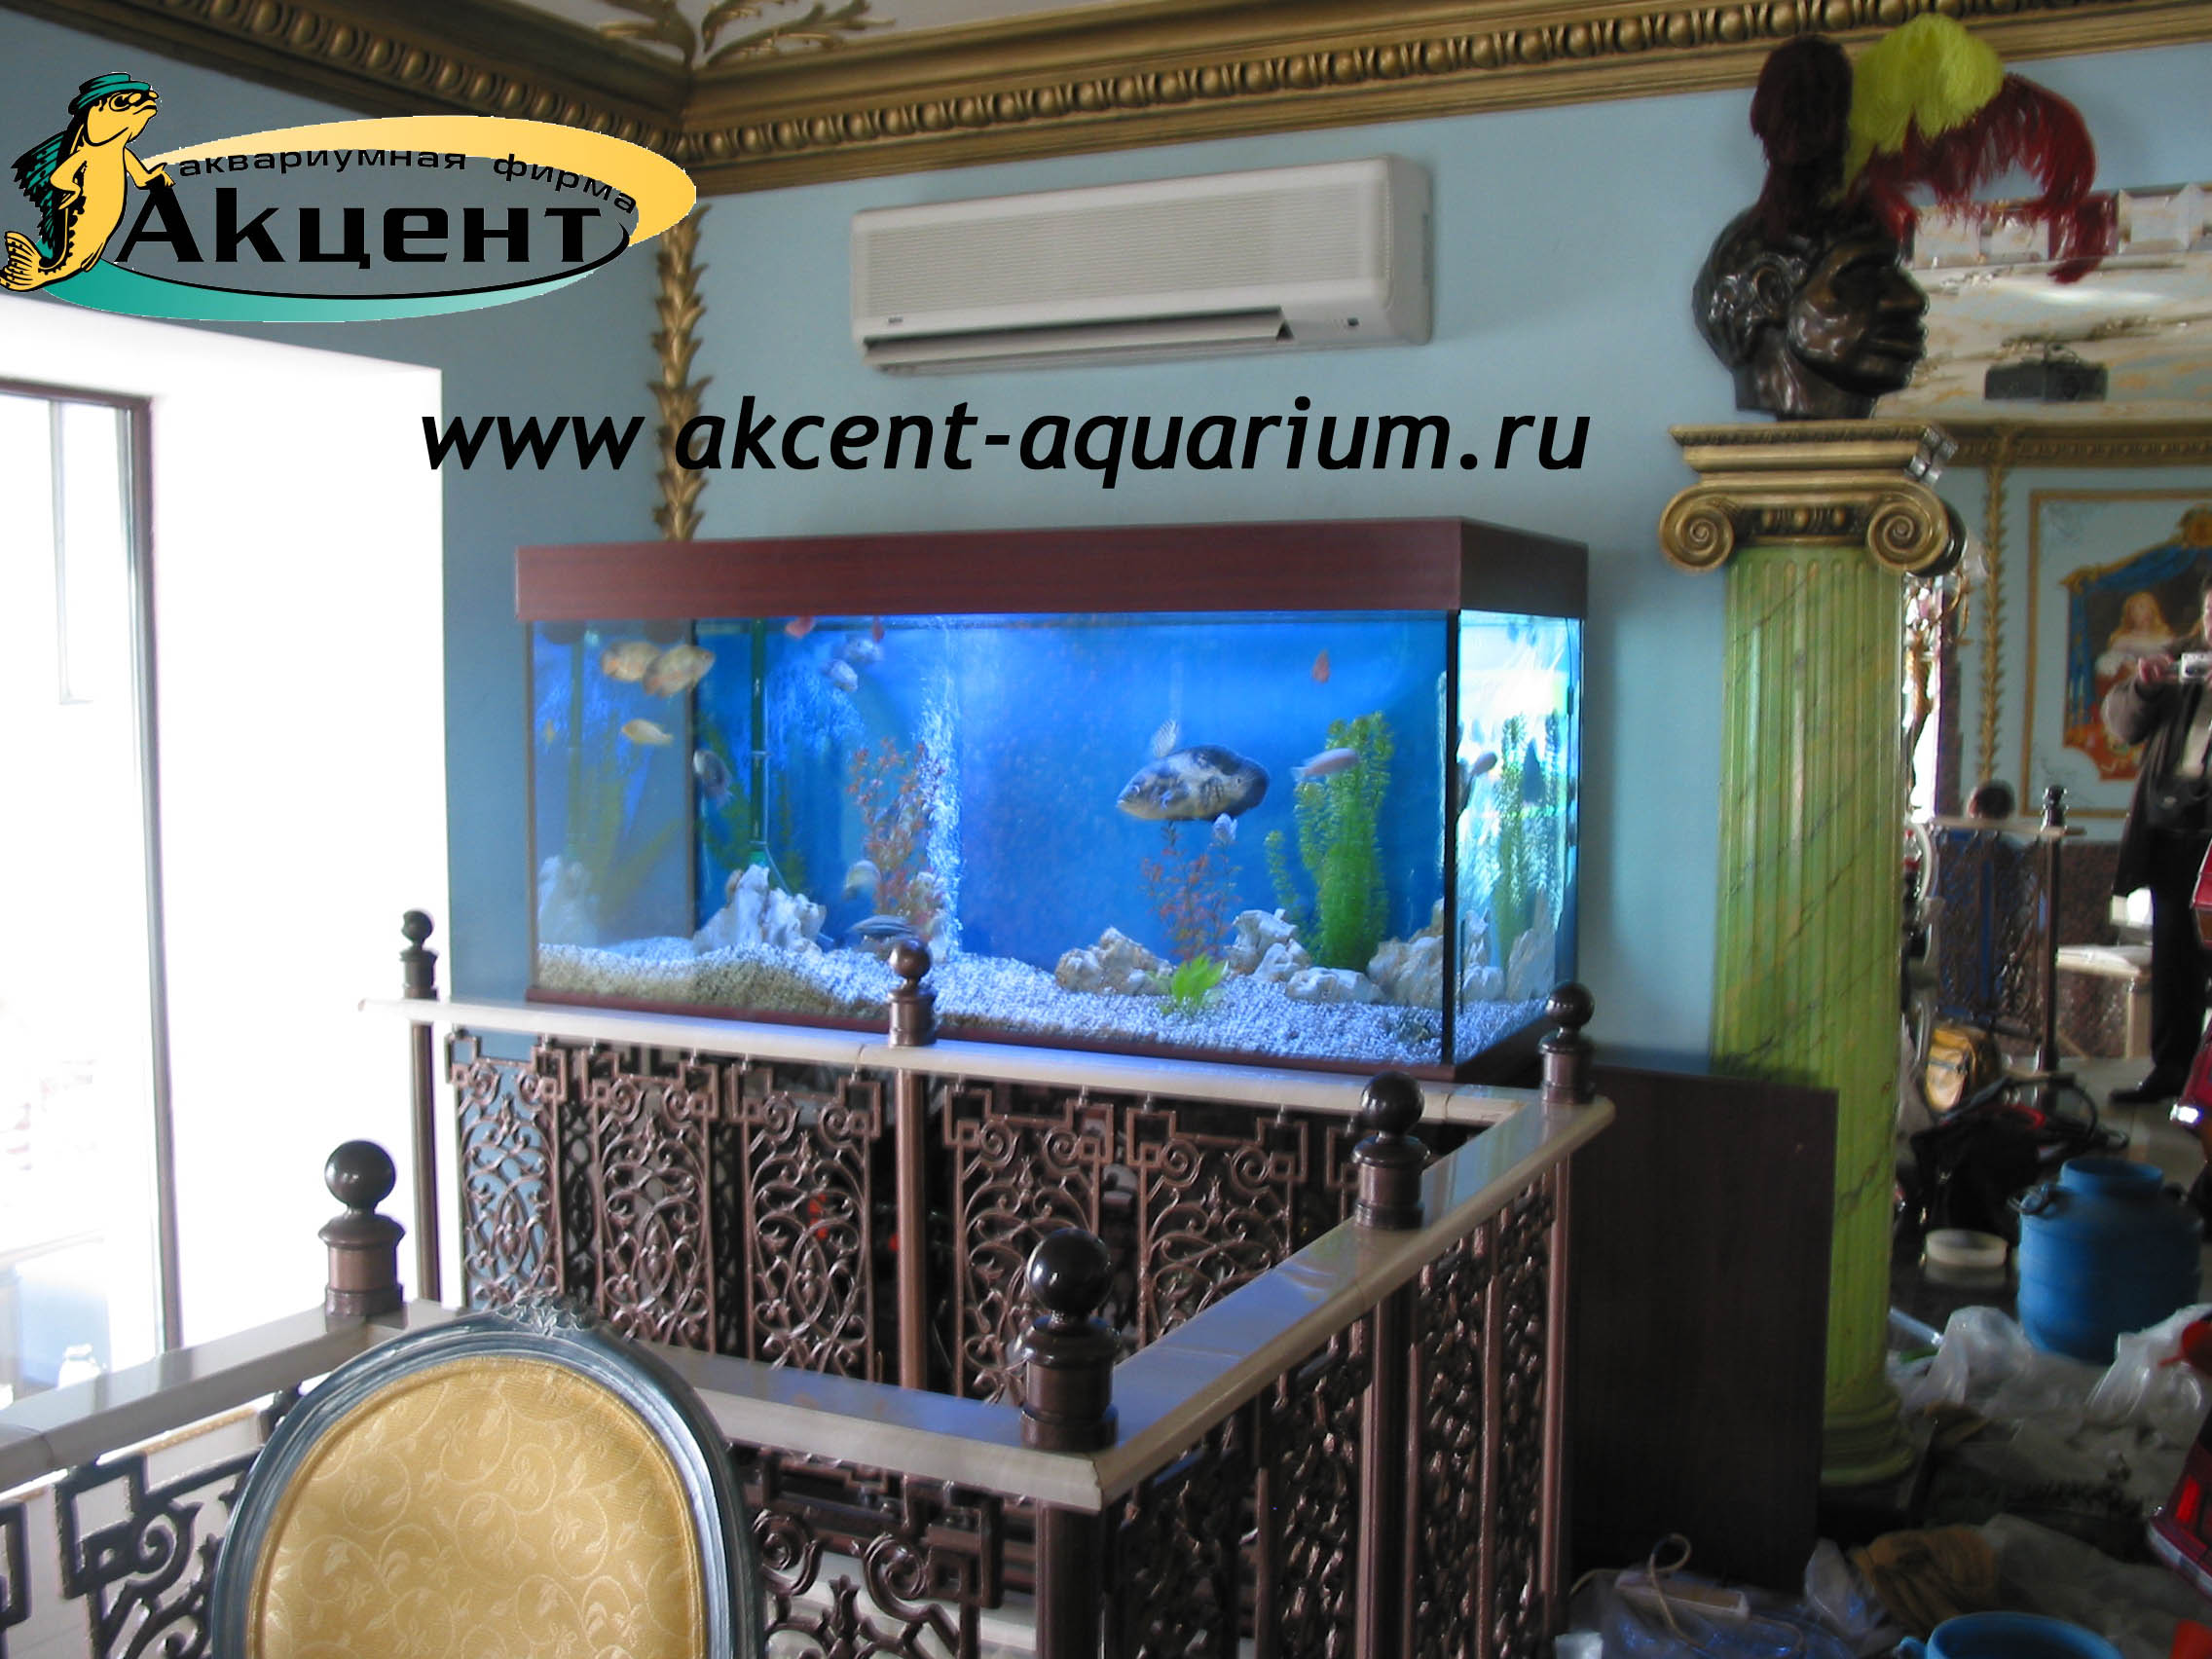 Акцент-аквариум, аквариум 600 литров, ресторан